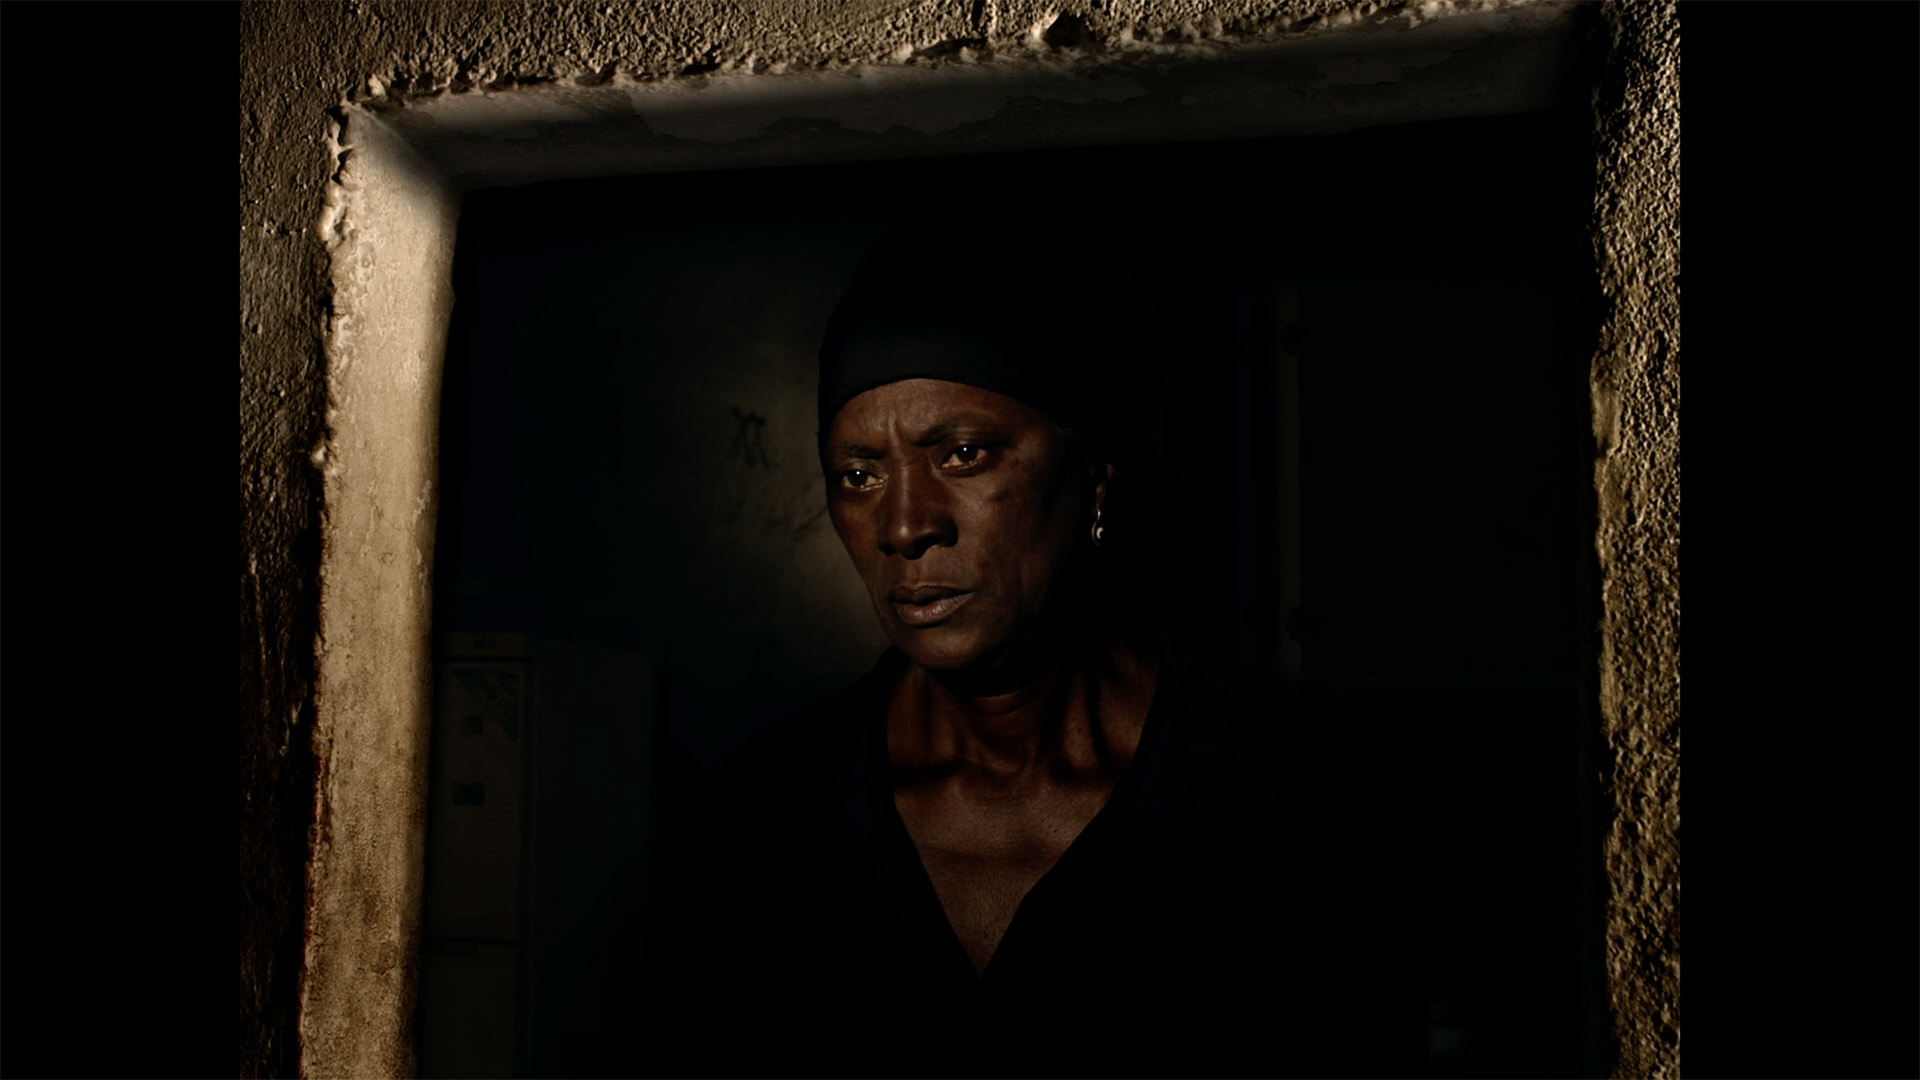 Trailer still frame from Vitalina Varela, woman in doorway